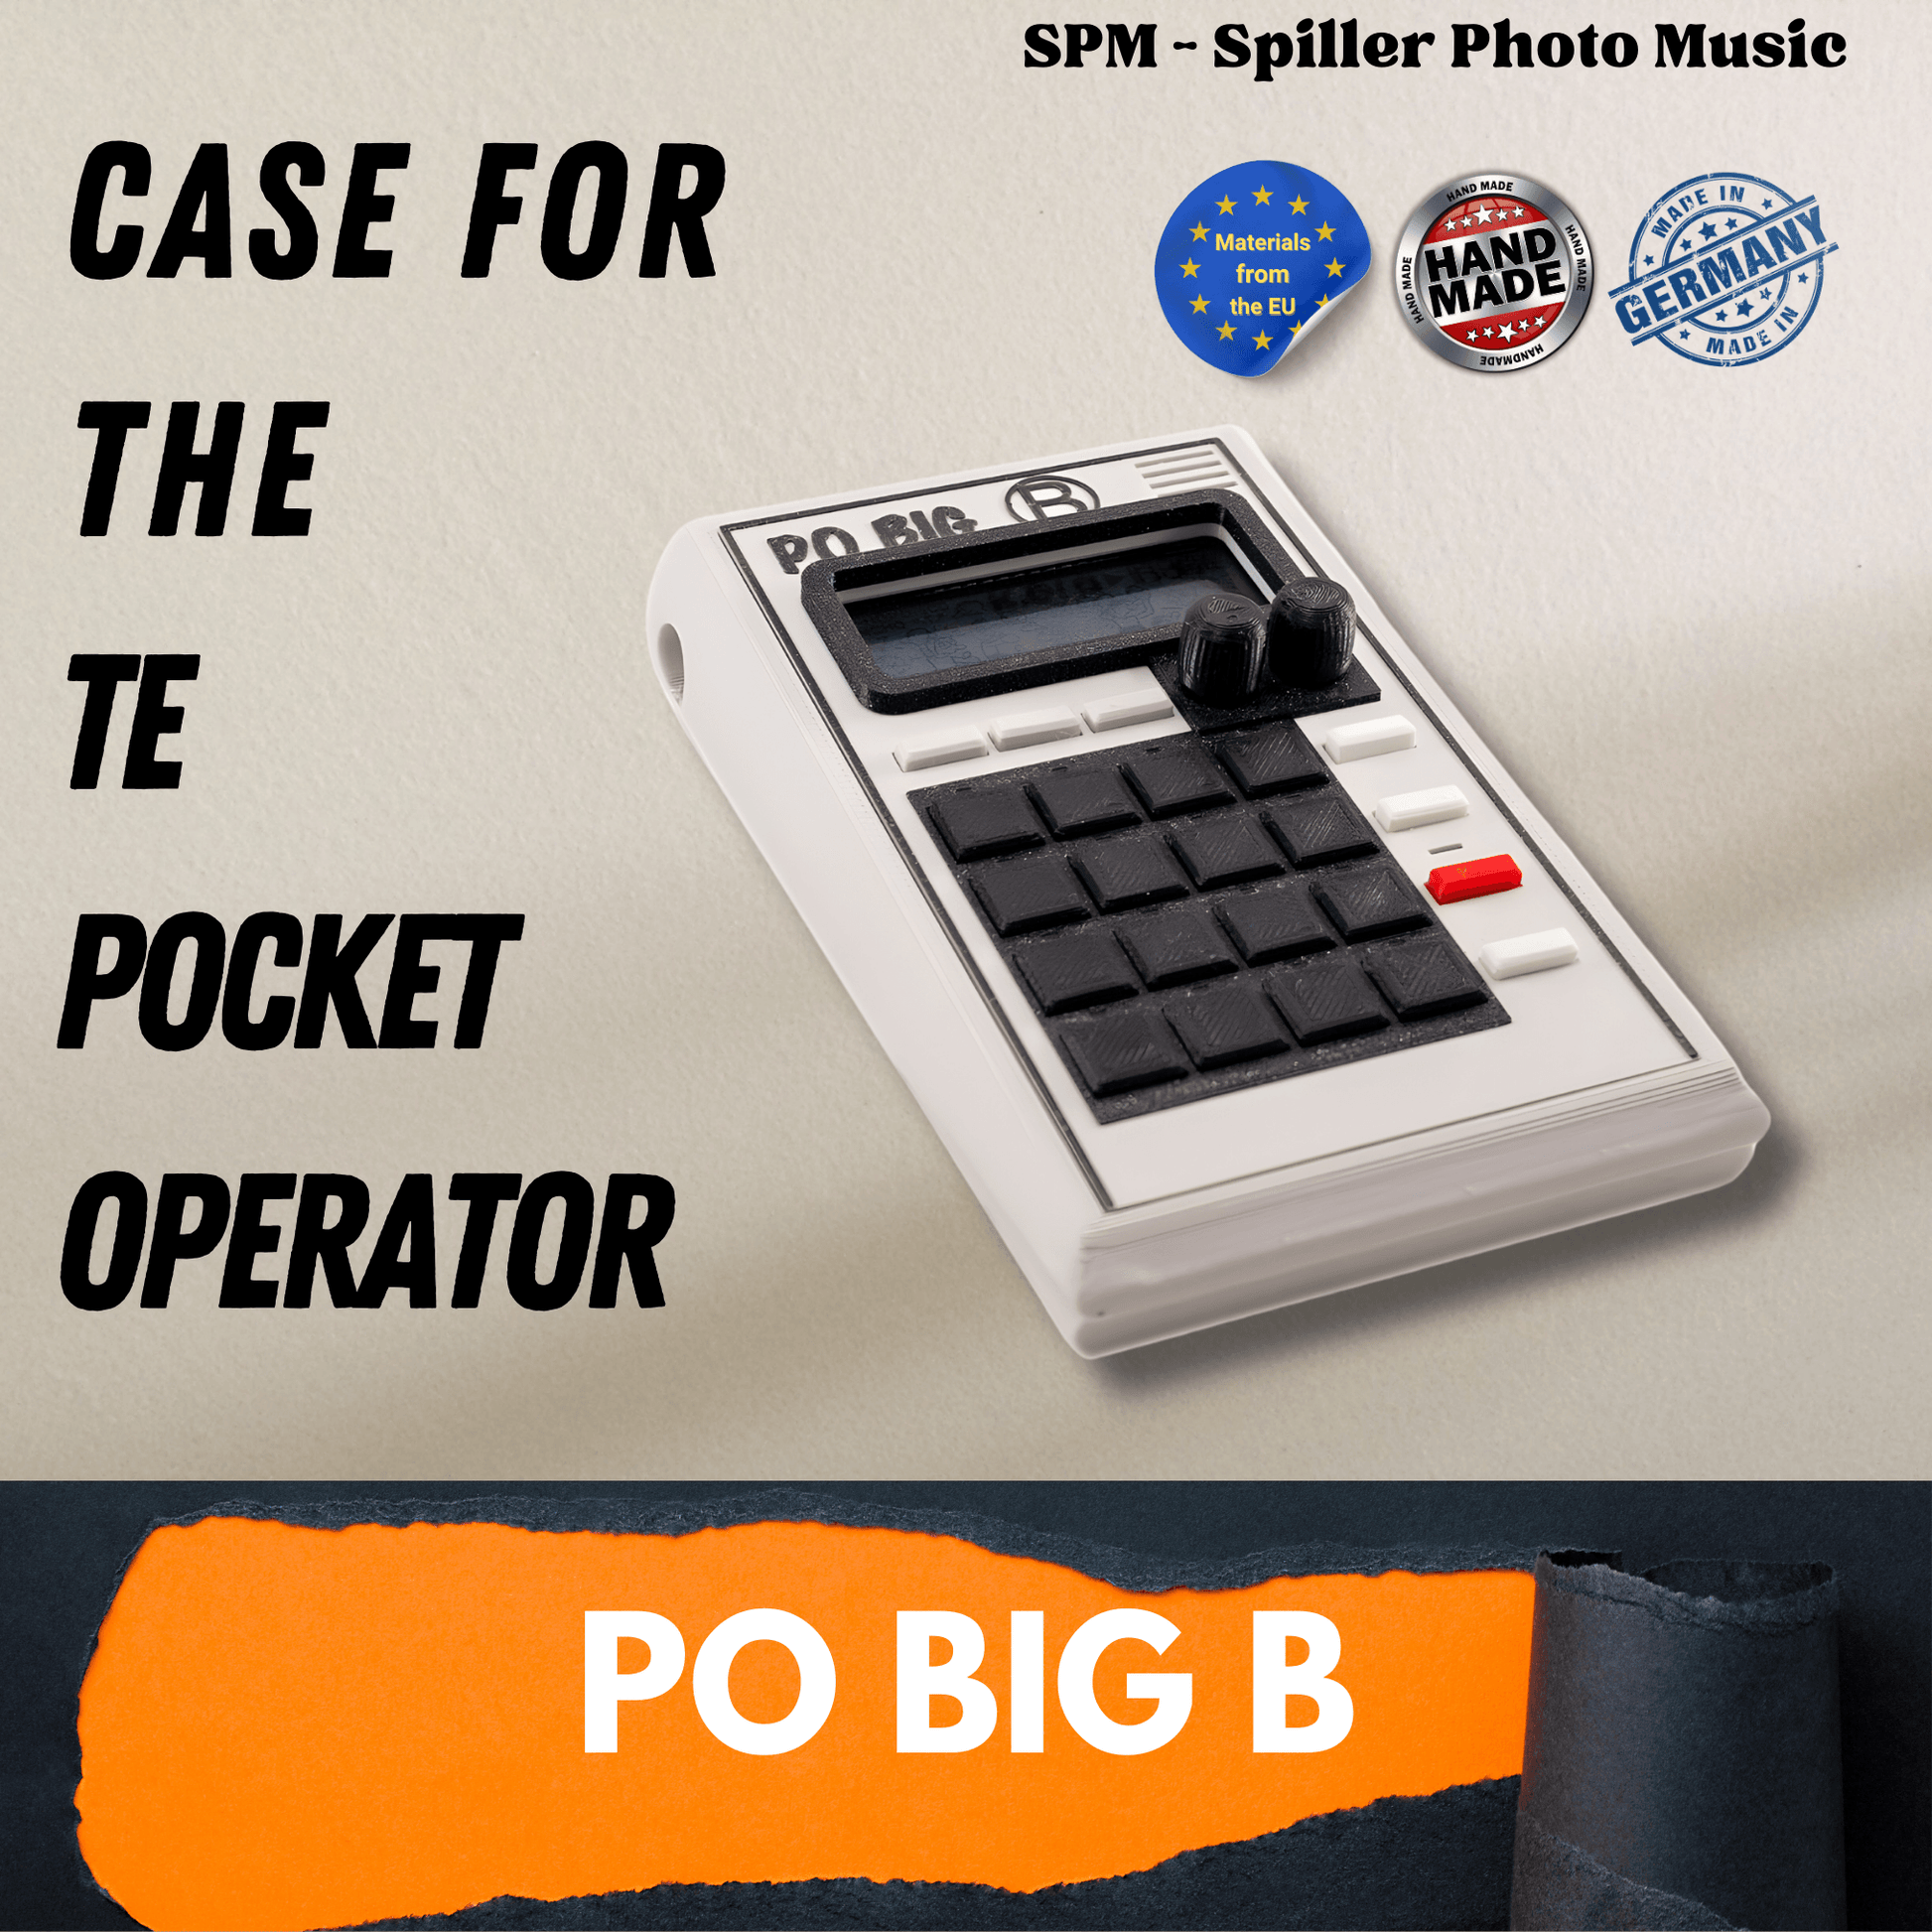 PO BIG B - 3D gedrucktes Gehäuse für den Teenage Engineering Pocket Operator - SPM - Spillerphoto & Music